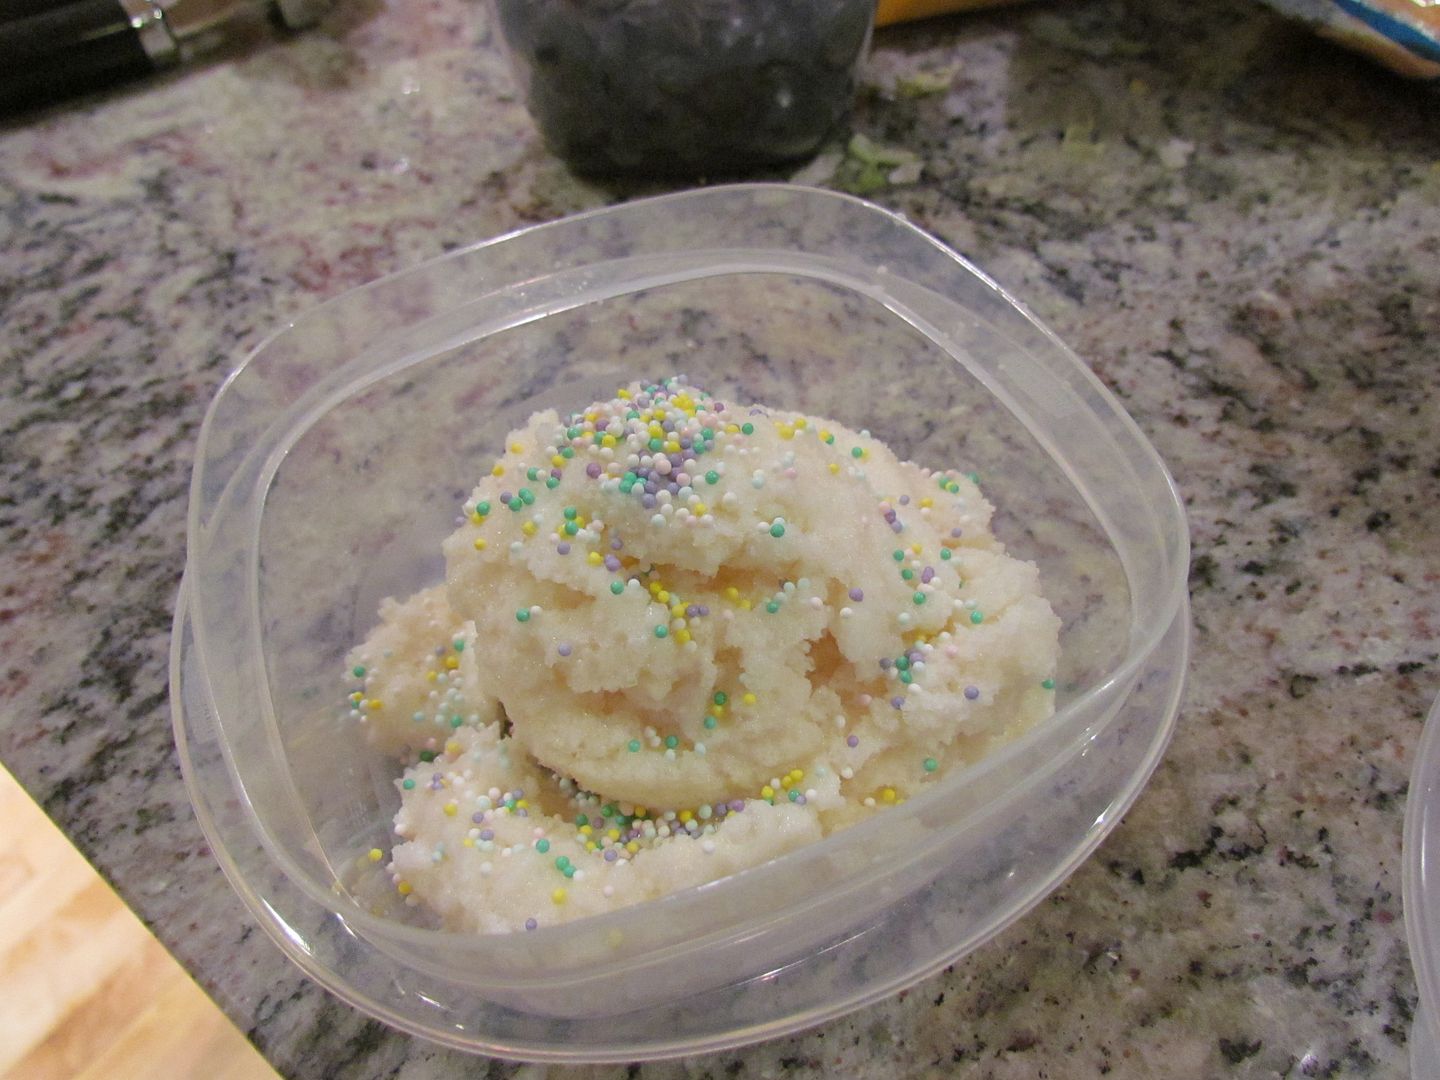 snow ice cream recipe